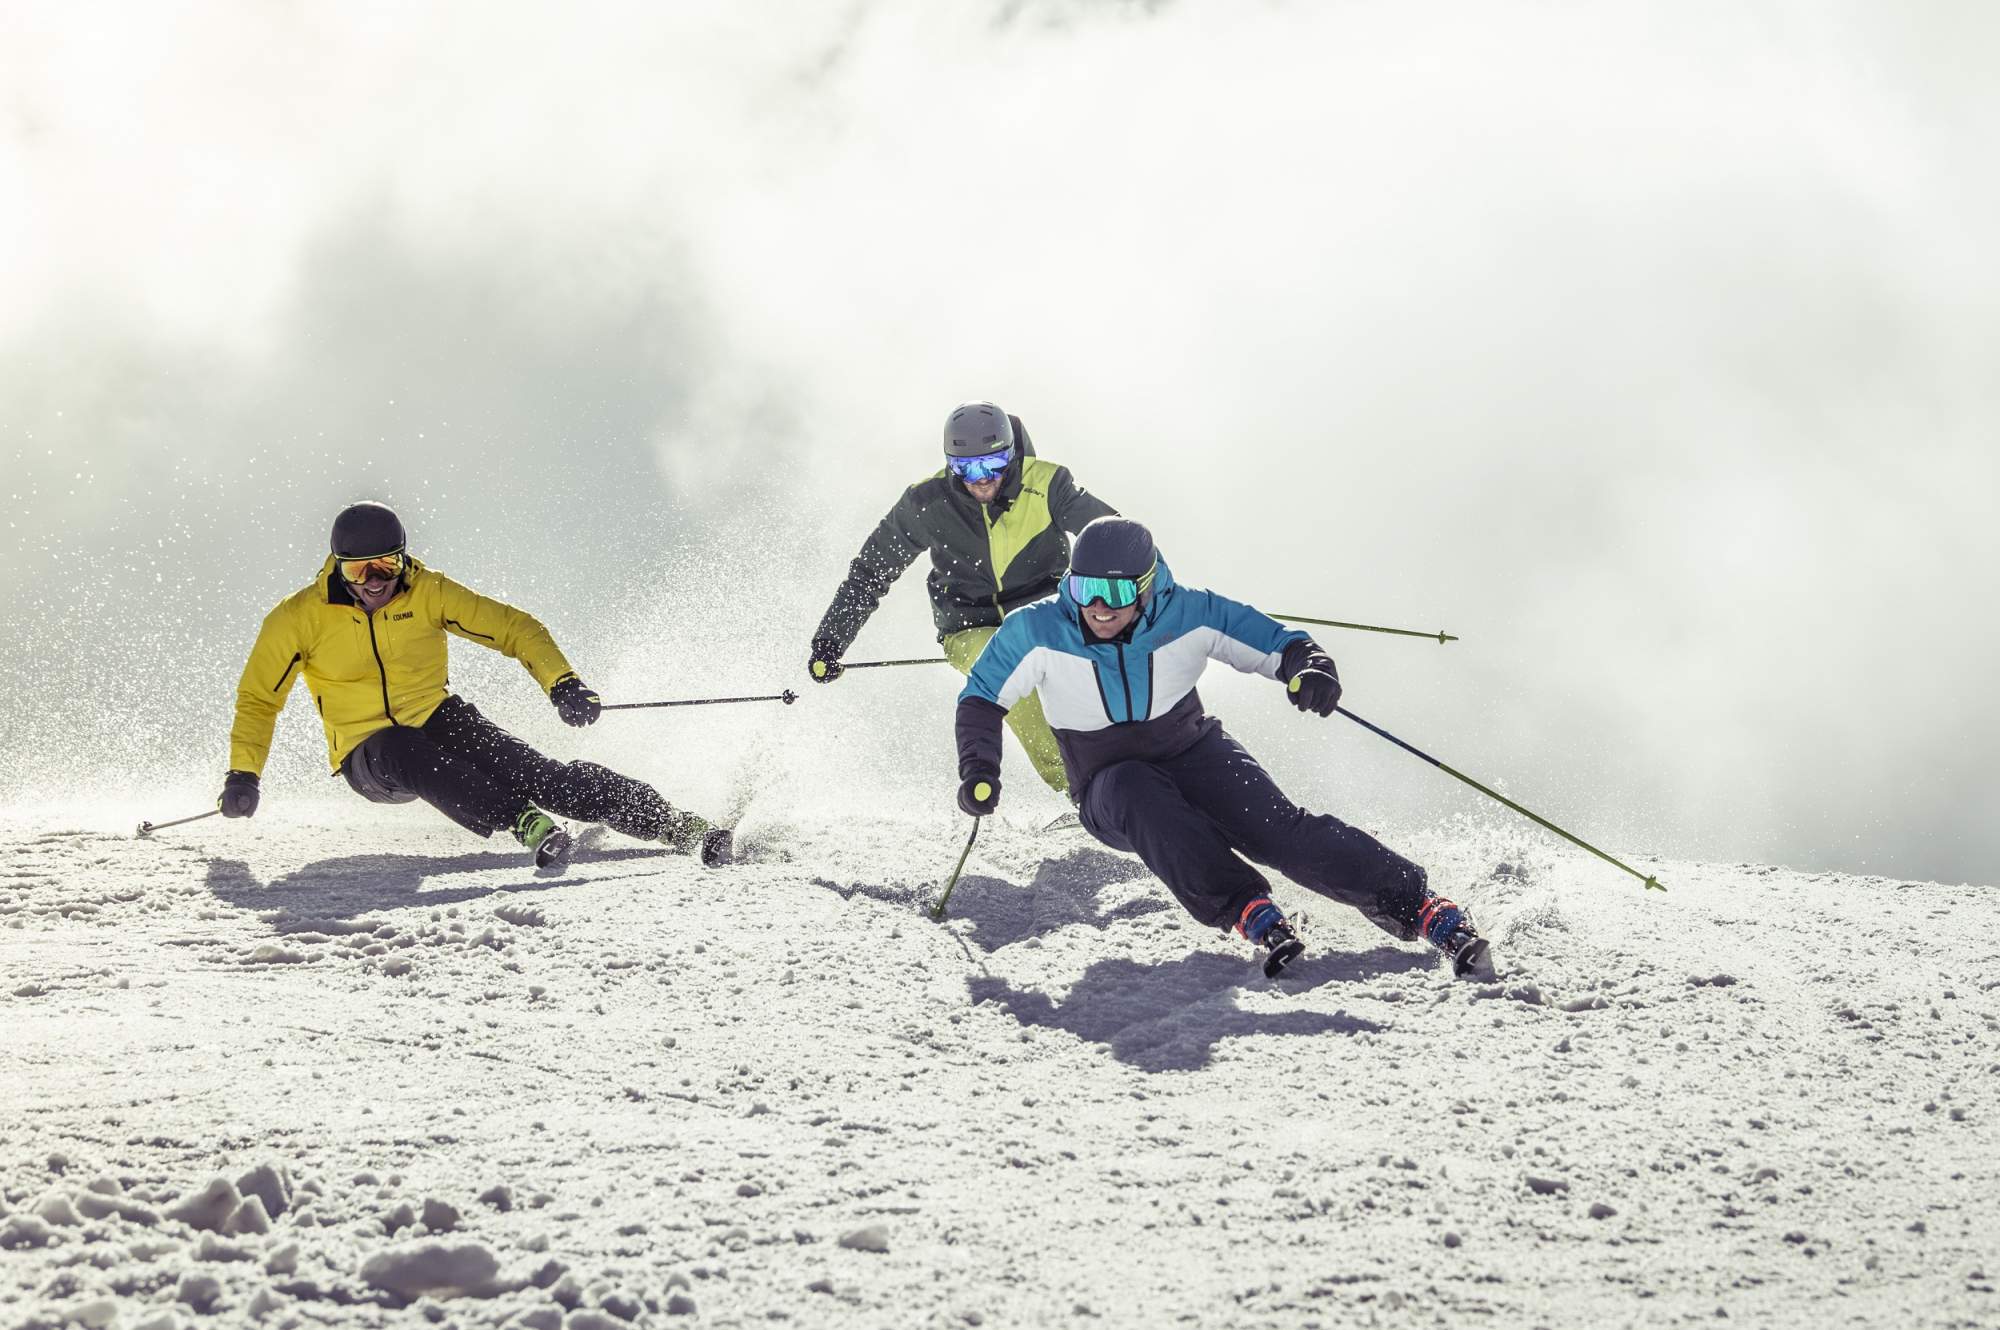 Горные лыжи Elan Amphibio 10Ti Powershift + El 10 GW Shift 2021, black/green, 176 см